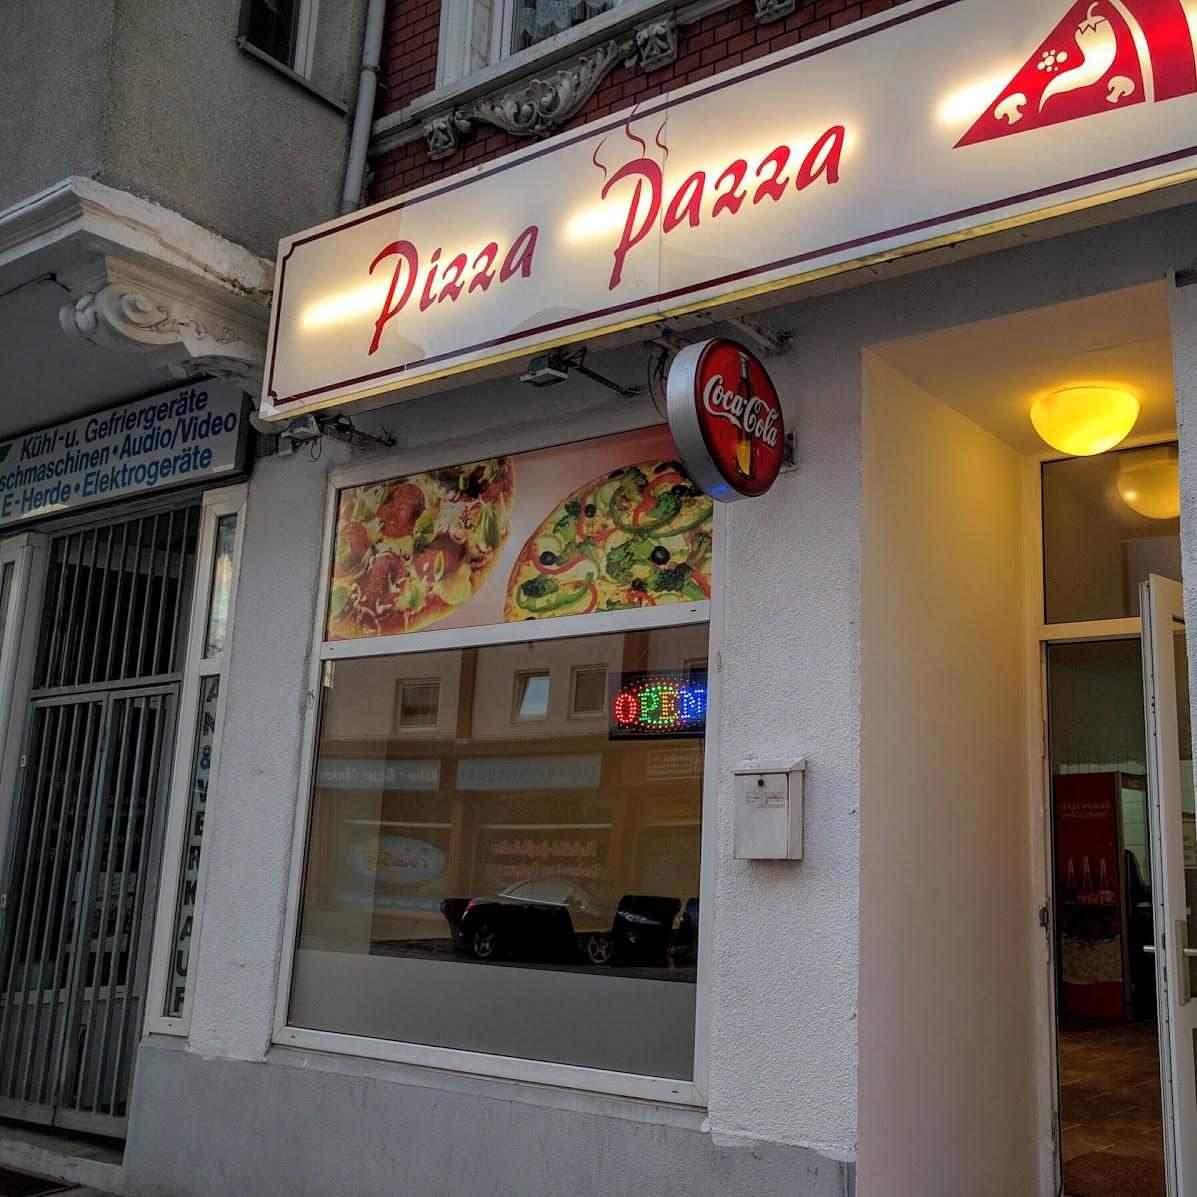 Restaurant "Pizza Pazza" in Bremerhaven